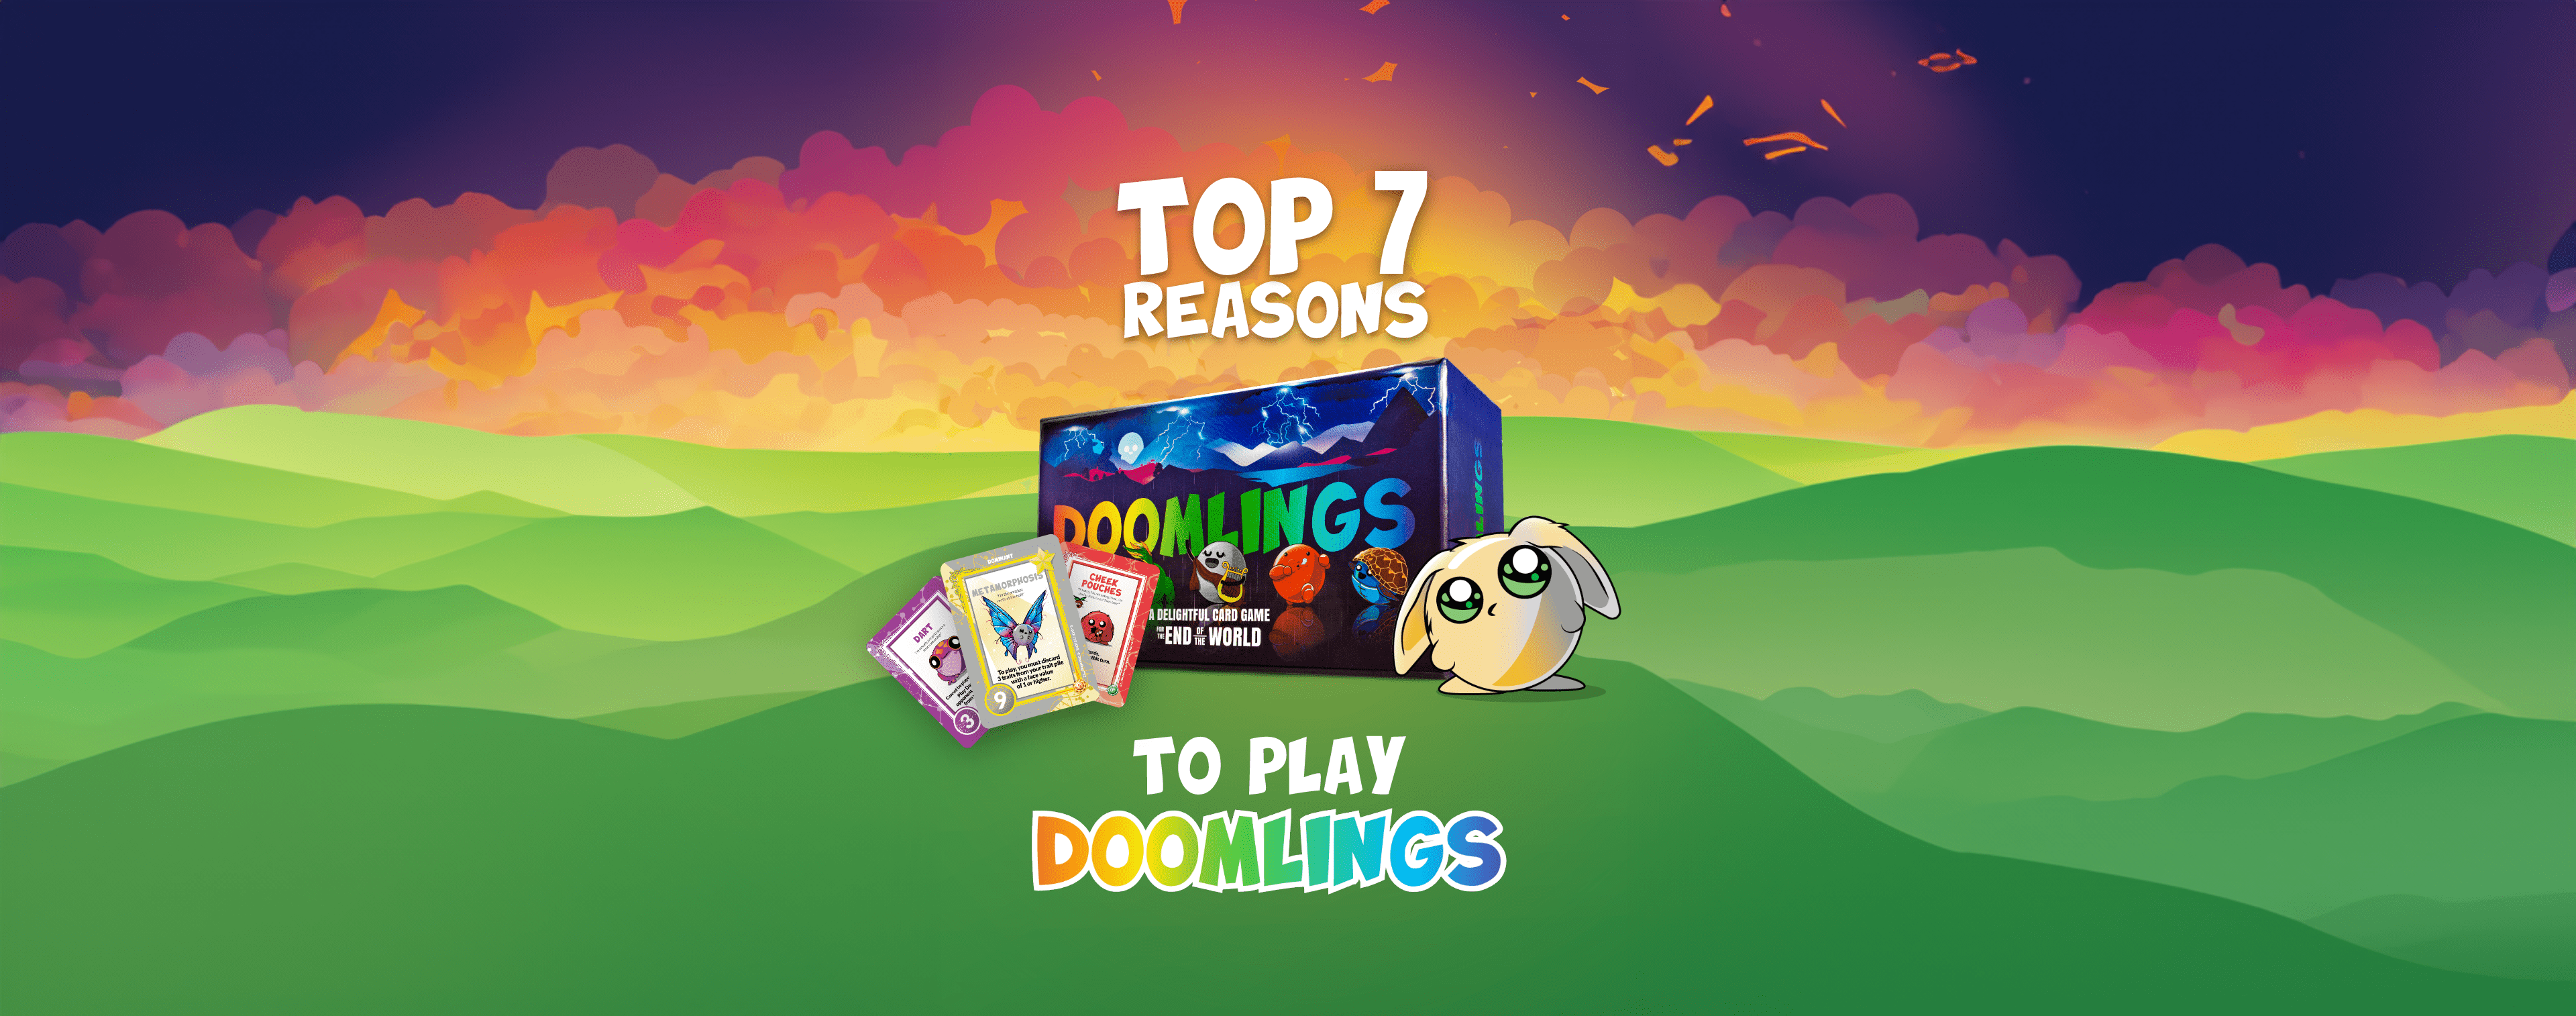 Top 7 Reasons to Play Doomlings